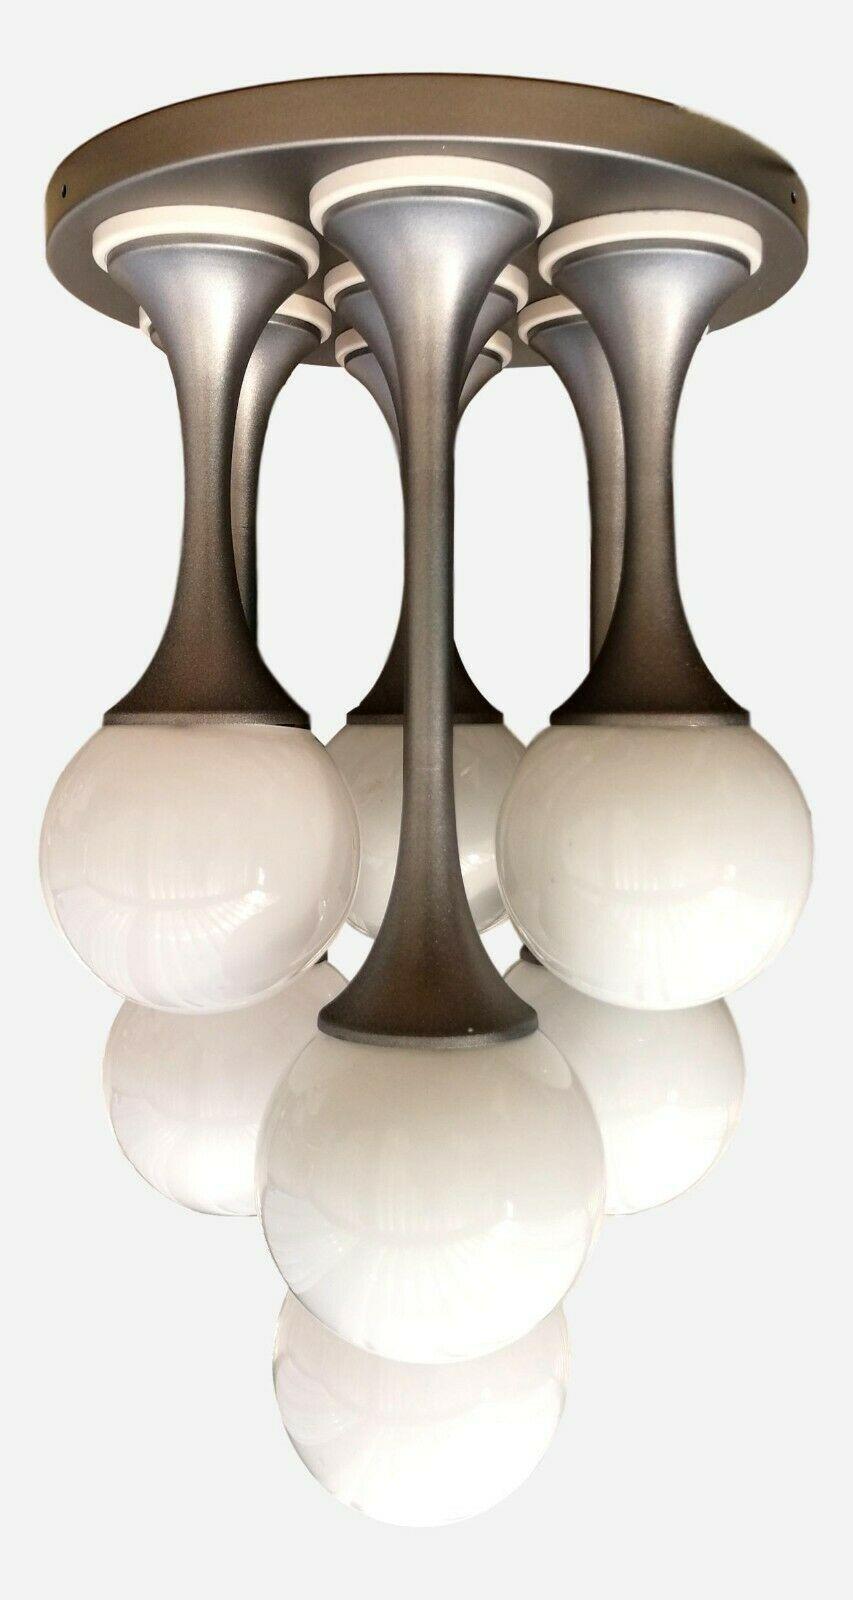 Prächtige Original-Lampe aus den 70er Jahren, ursprünglich wahrscheinlich als Kronleuchter geboren und später als Tischlampe verwendet, wahrscheinlich von Goffredo Reggiani hergestellt, bestehend aus einem Stahlsockel und sieben trompetenförmigen